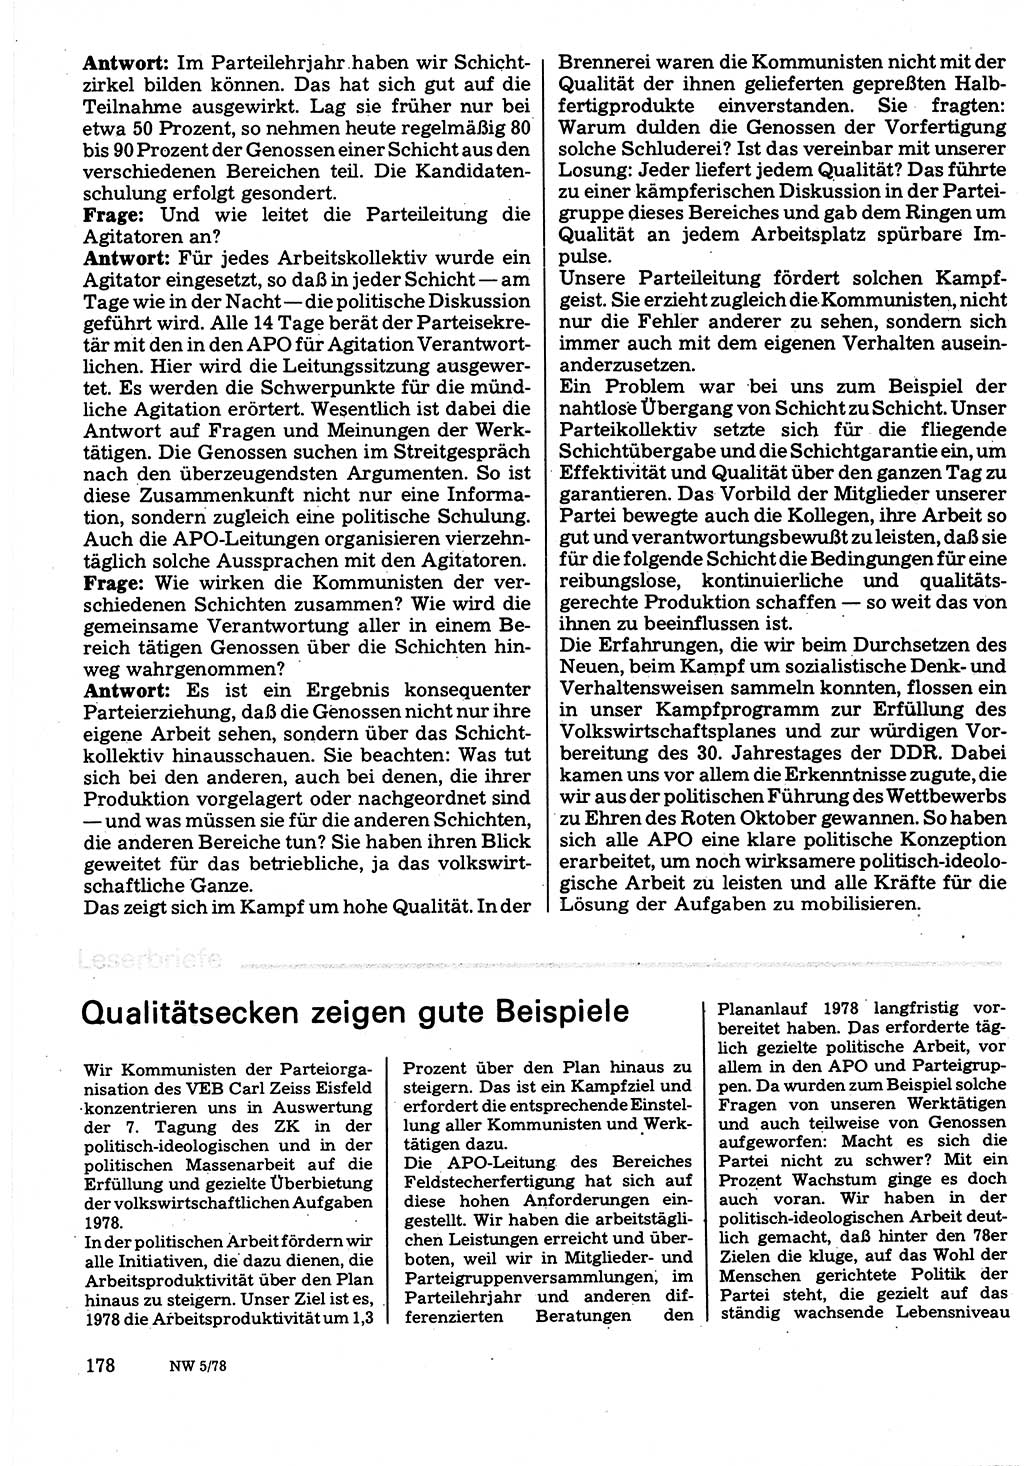 Neuer Weg (NW), Organ des Zentralkomitees (ZK) der SED (Sozialistische Einheitspartei Deutschlands) für Fragen des Parteilebens, 33. Jahrgang [Deutsche Demokratische Republik (DDR)] 1978, Seite 178 (NW ZK SED DDR 1978, S. 178)